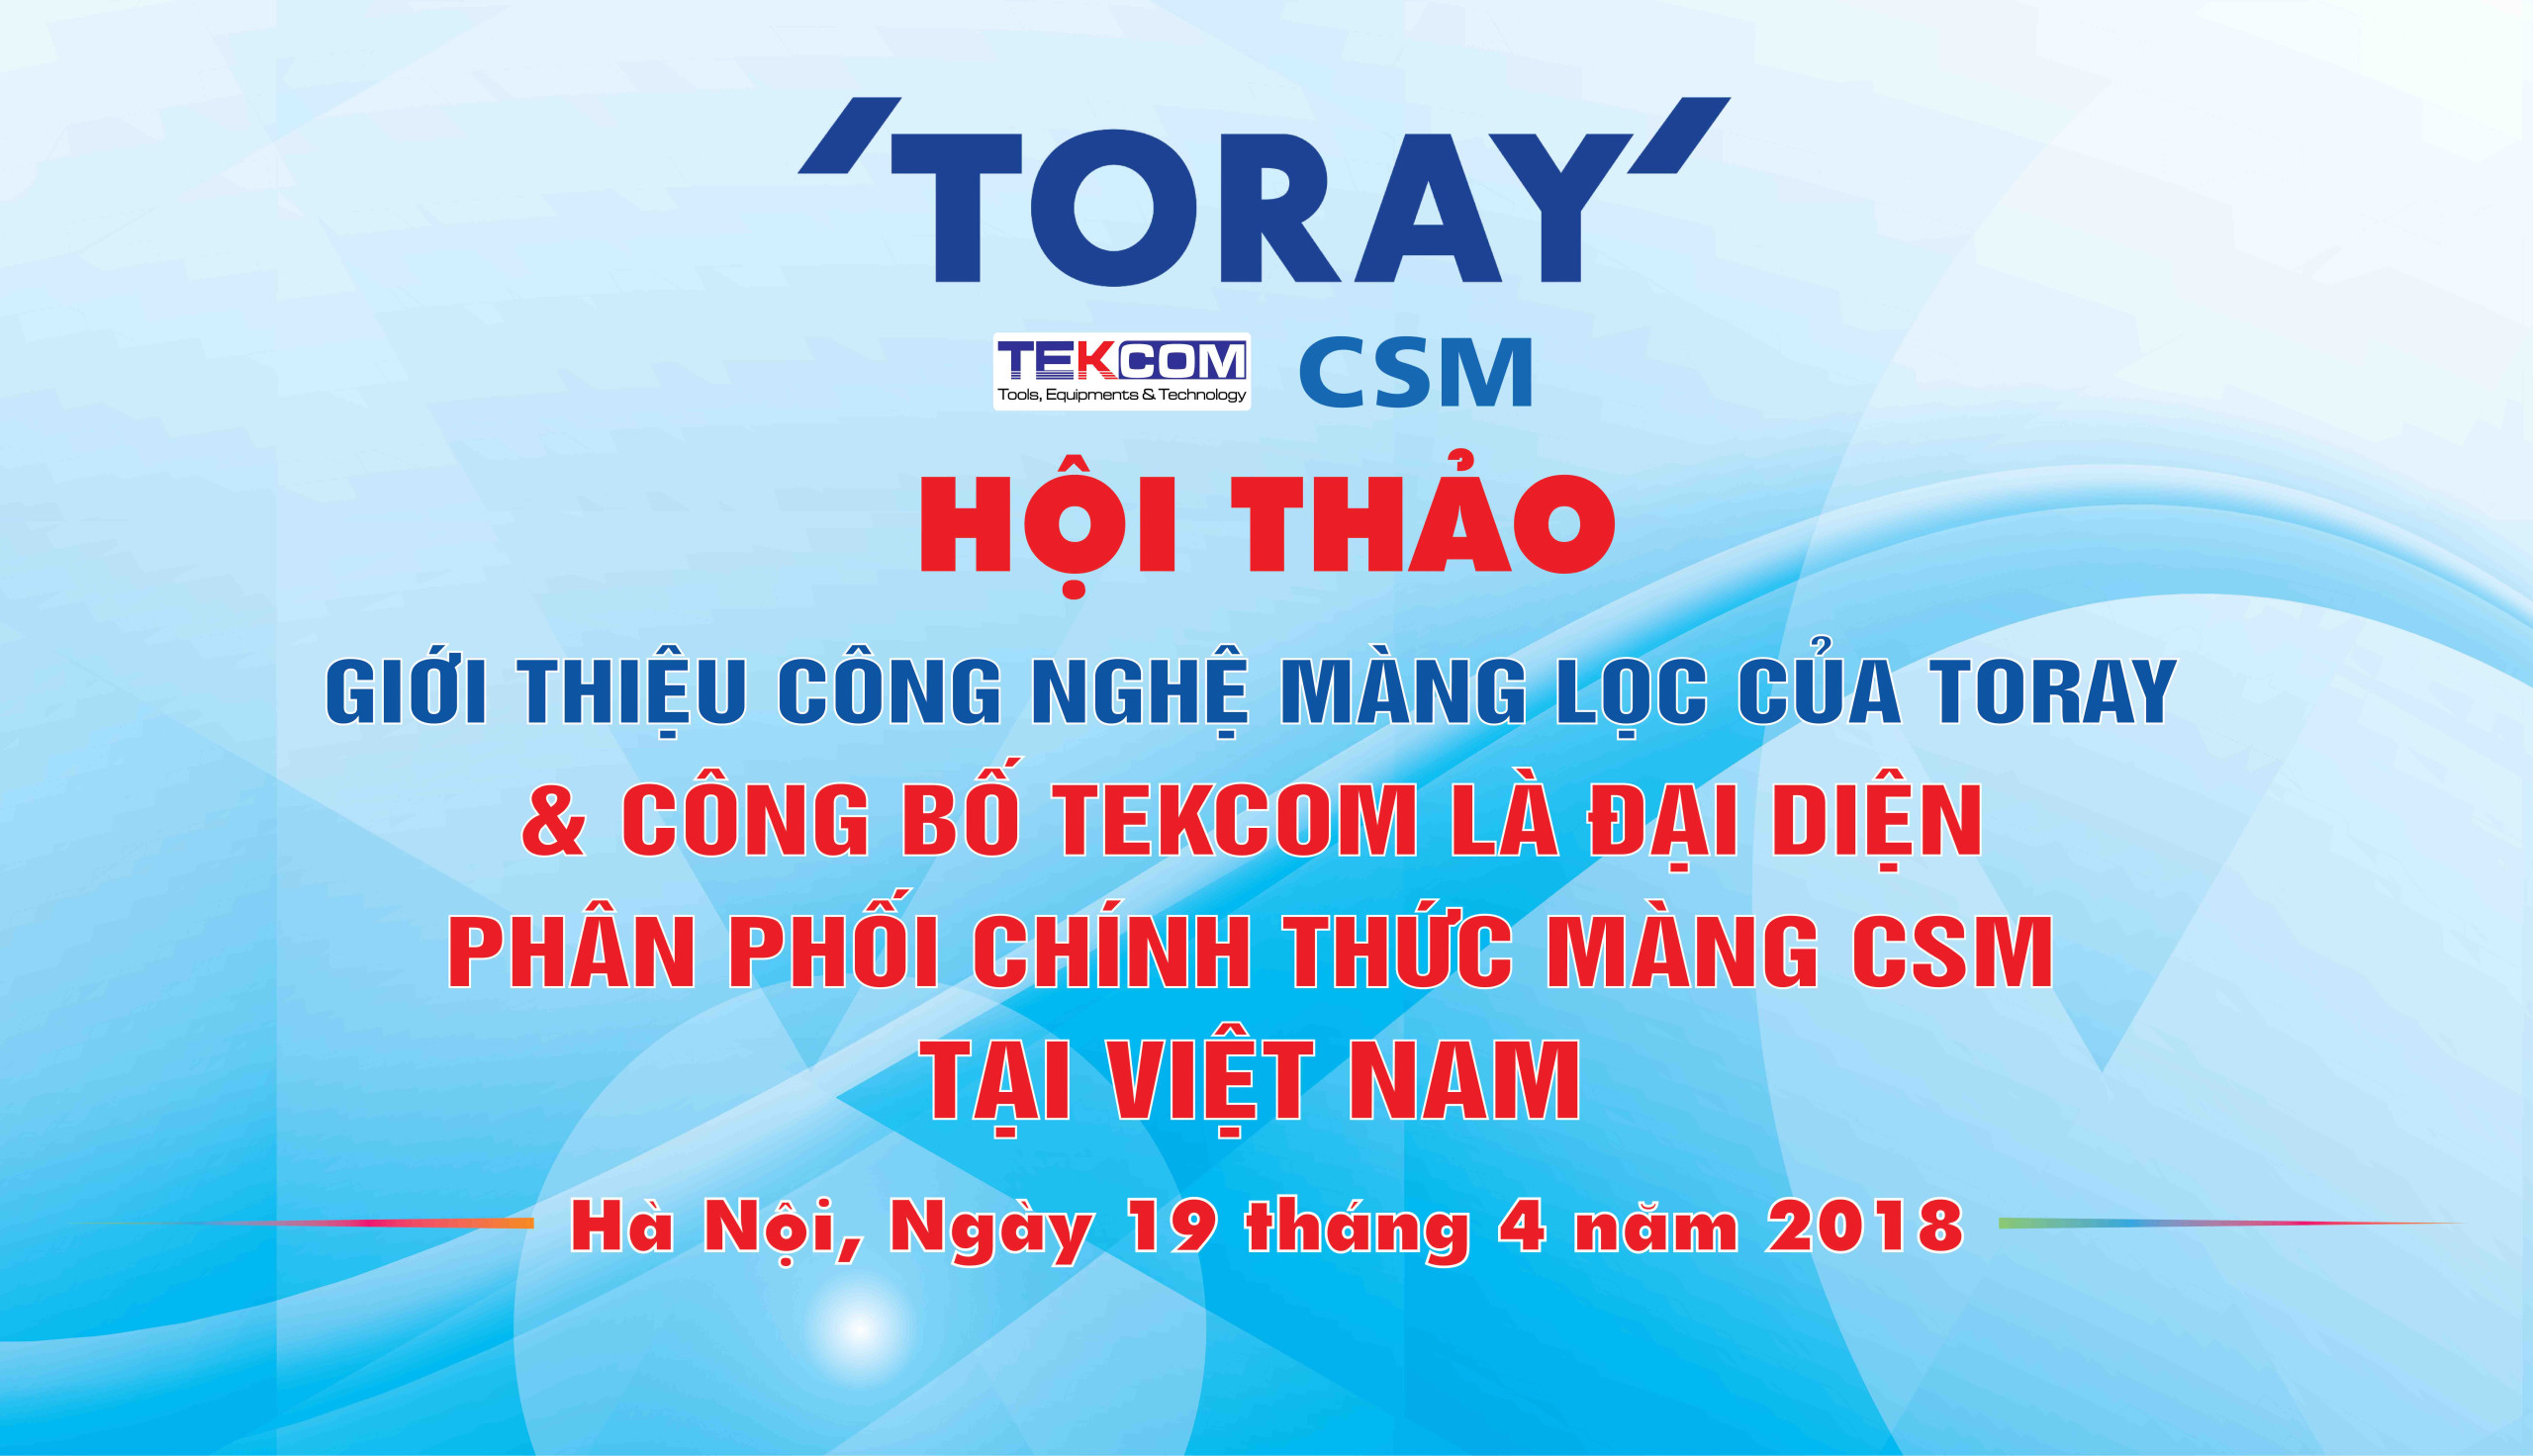 Hội thảo công bố Tekcom đại diện phân phối chính thức màng CSM tại Việt Nam